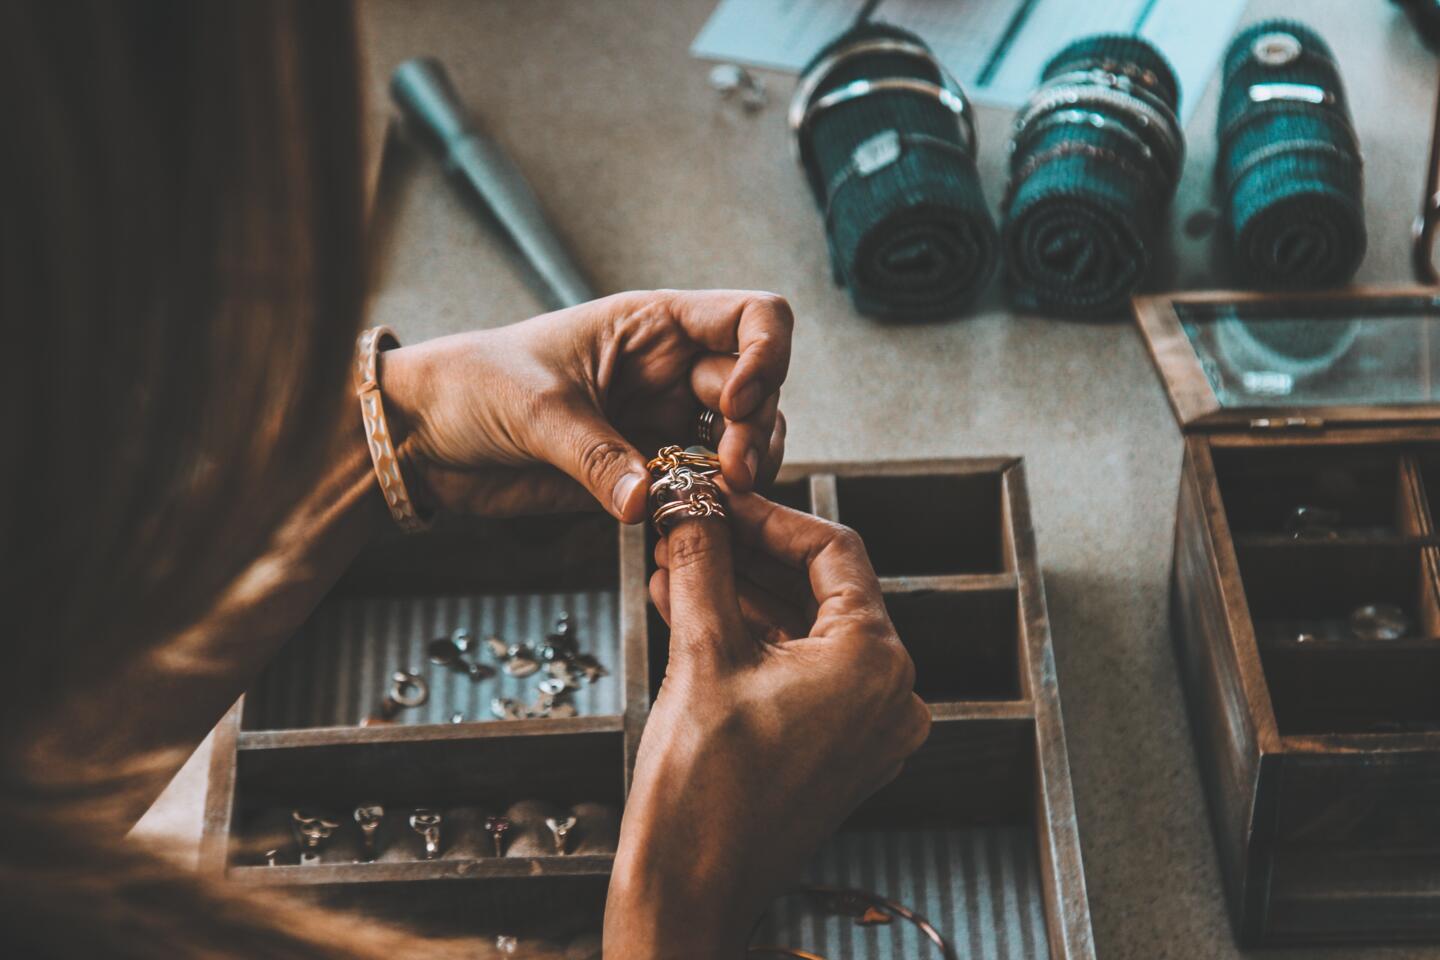 Schmuckhandwerker, der sorgfältig an einem Ring in seiner Werkstatt arbeitet, mit Werkzeugen und Fächerschachteln mit verschiedenen Schmuckstücken im Hintergrund, was eine Atmosphäre von Kreativität und Präzision für die Bijorhca Paris Ausstellung vermittelt.